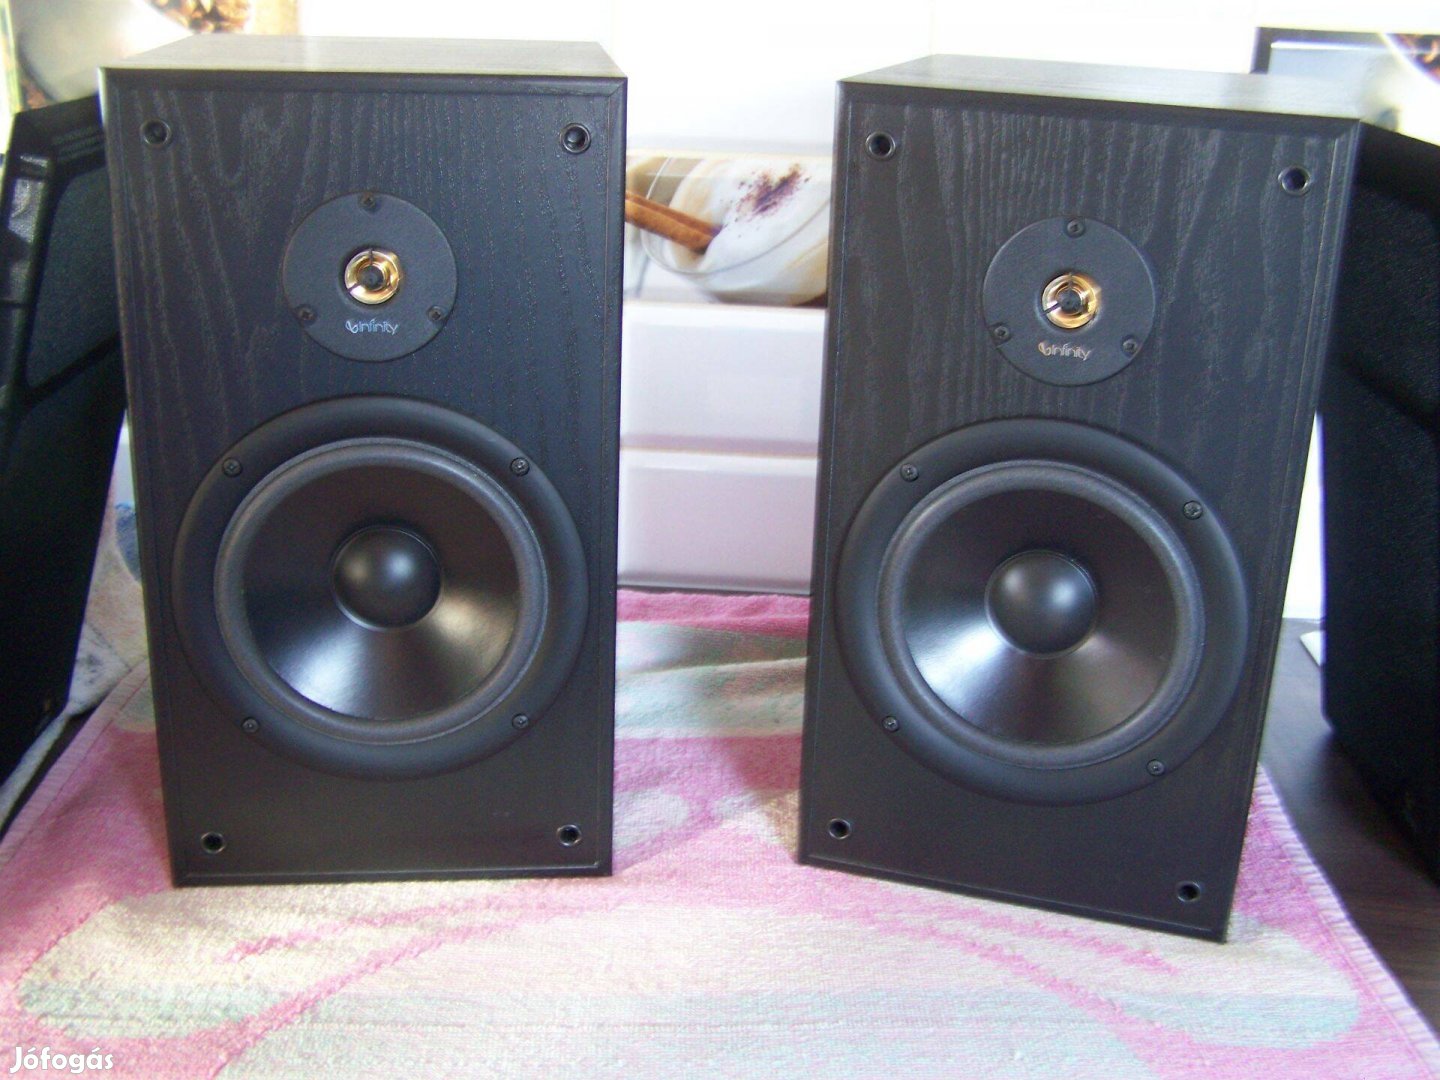 Infinity Reference 11 Mk II speakers